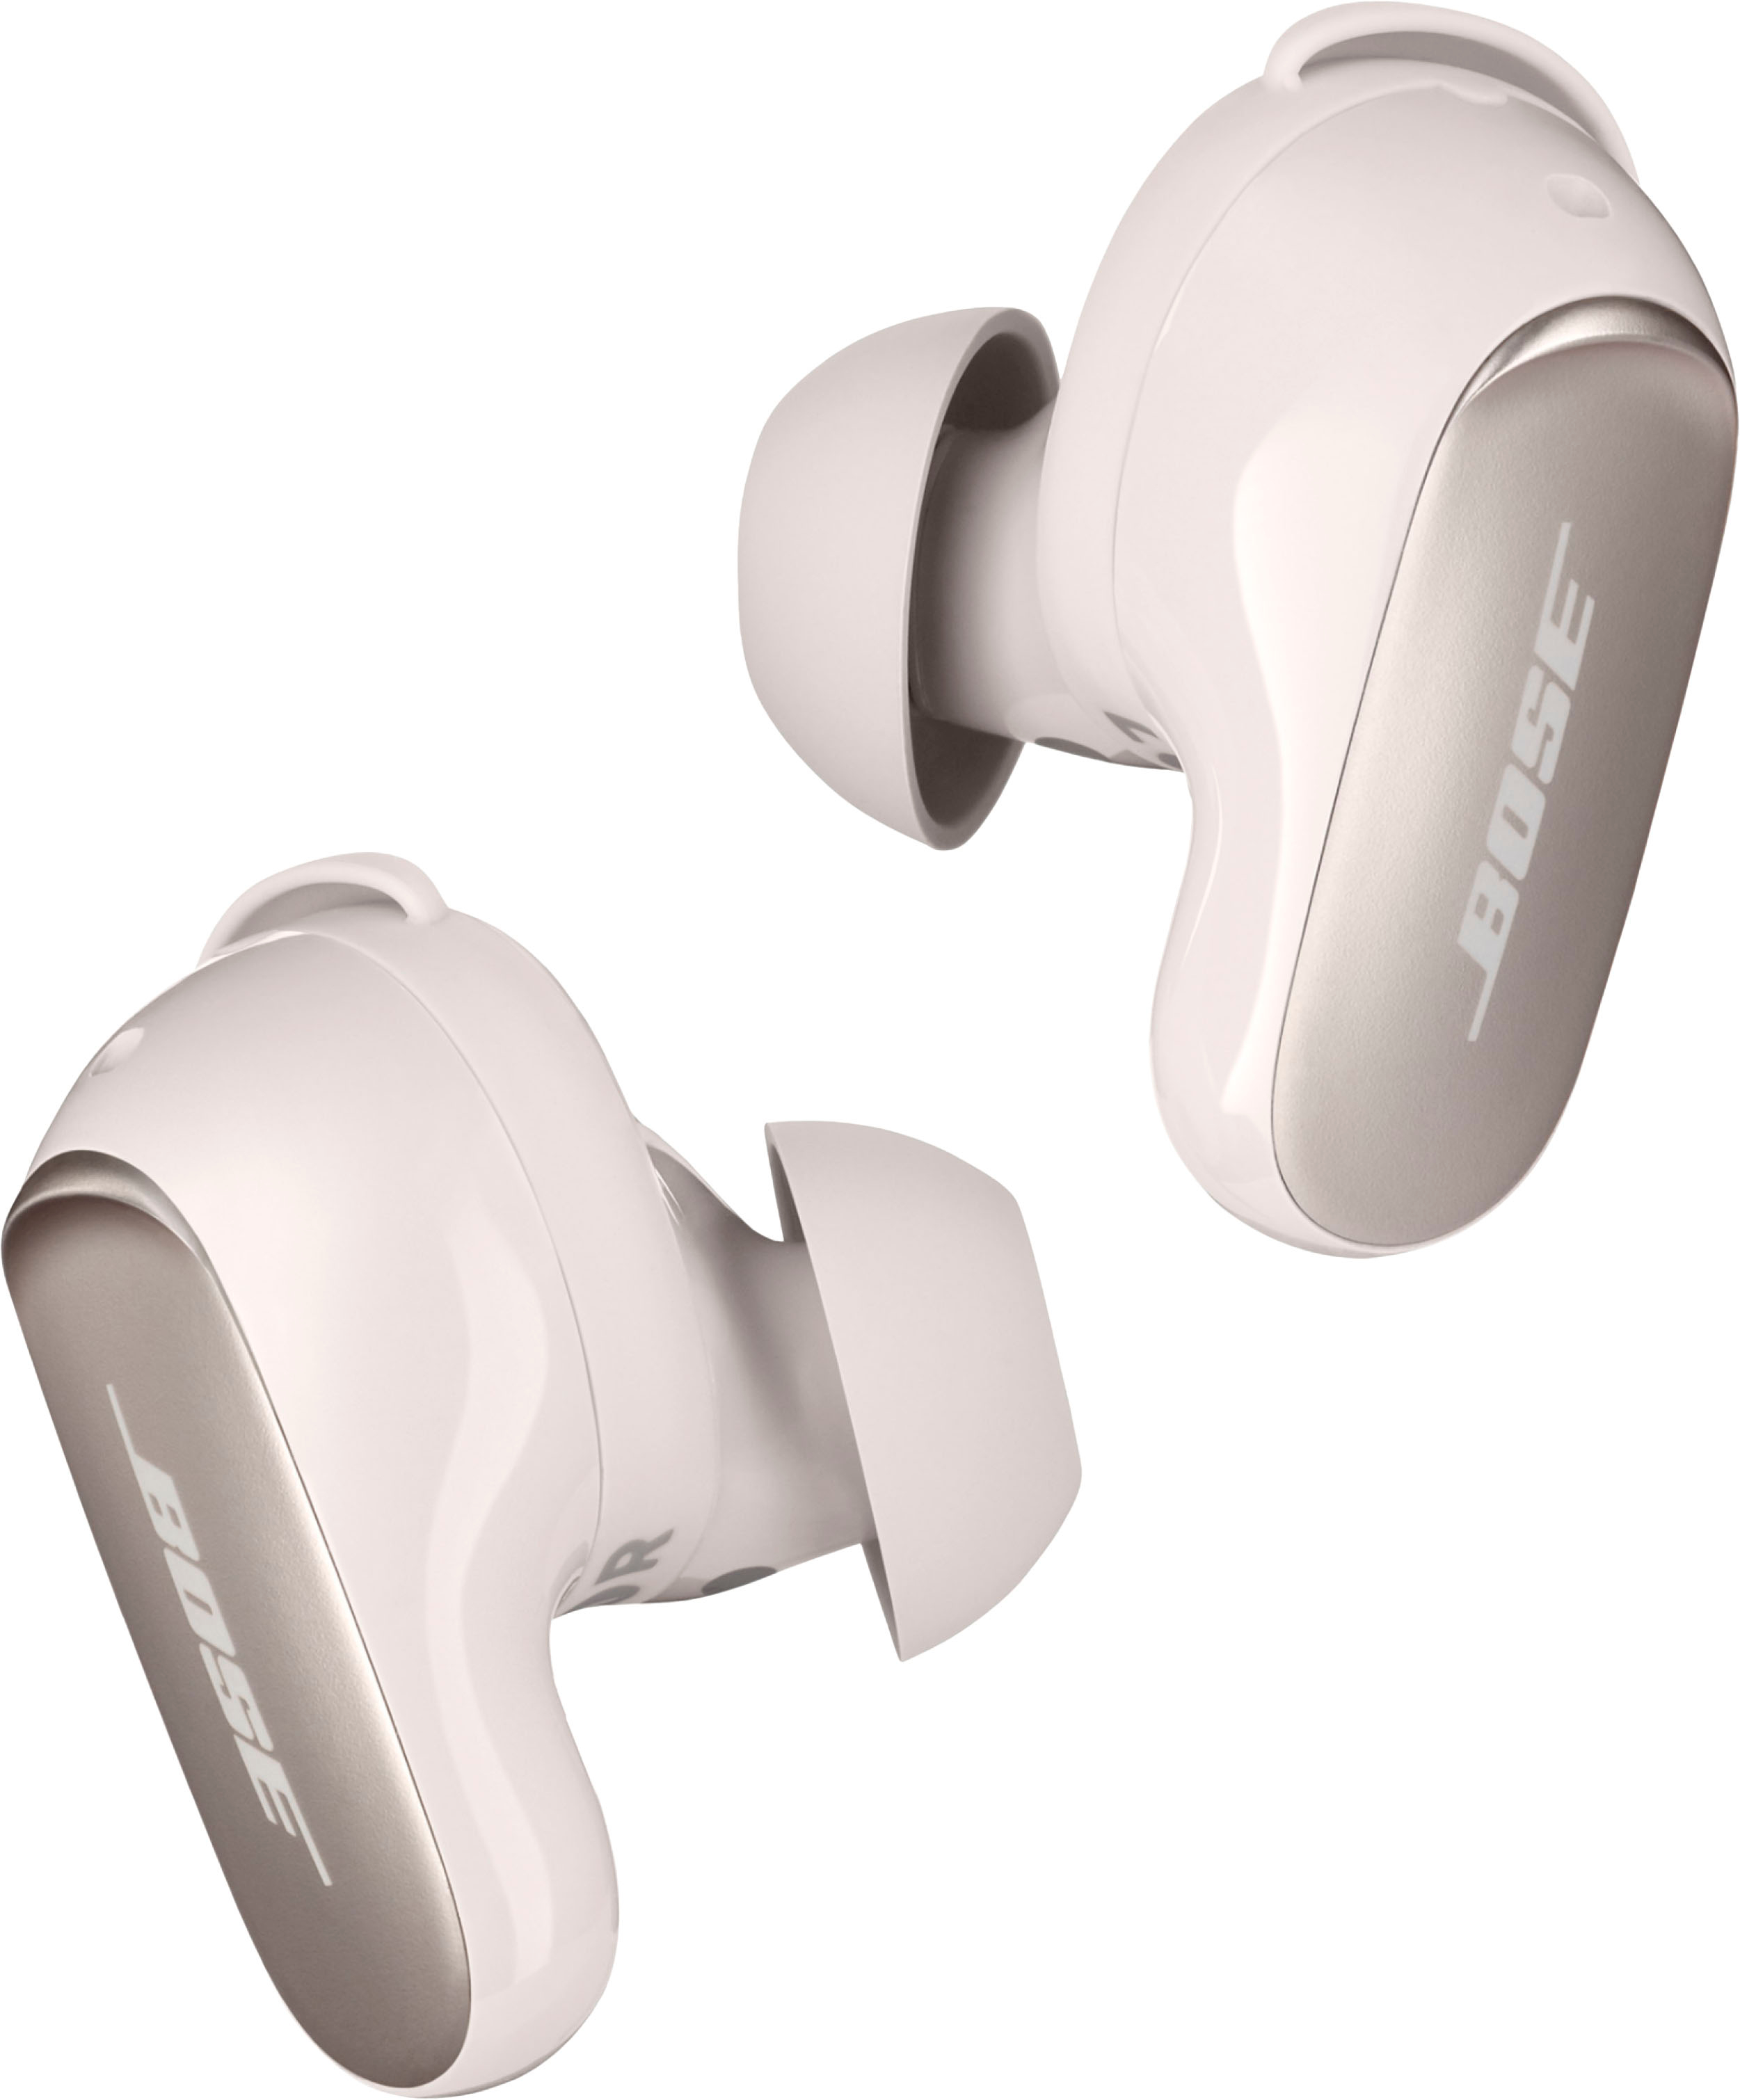 Bose QuietComfort Ultra True Wireless Noise Cancelling In-Ear Earbuds White  Smoke 882826-0020 - Best Buy